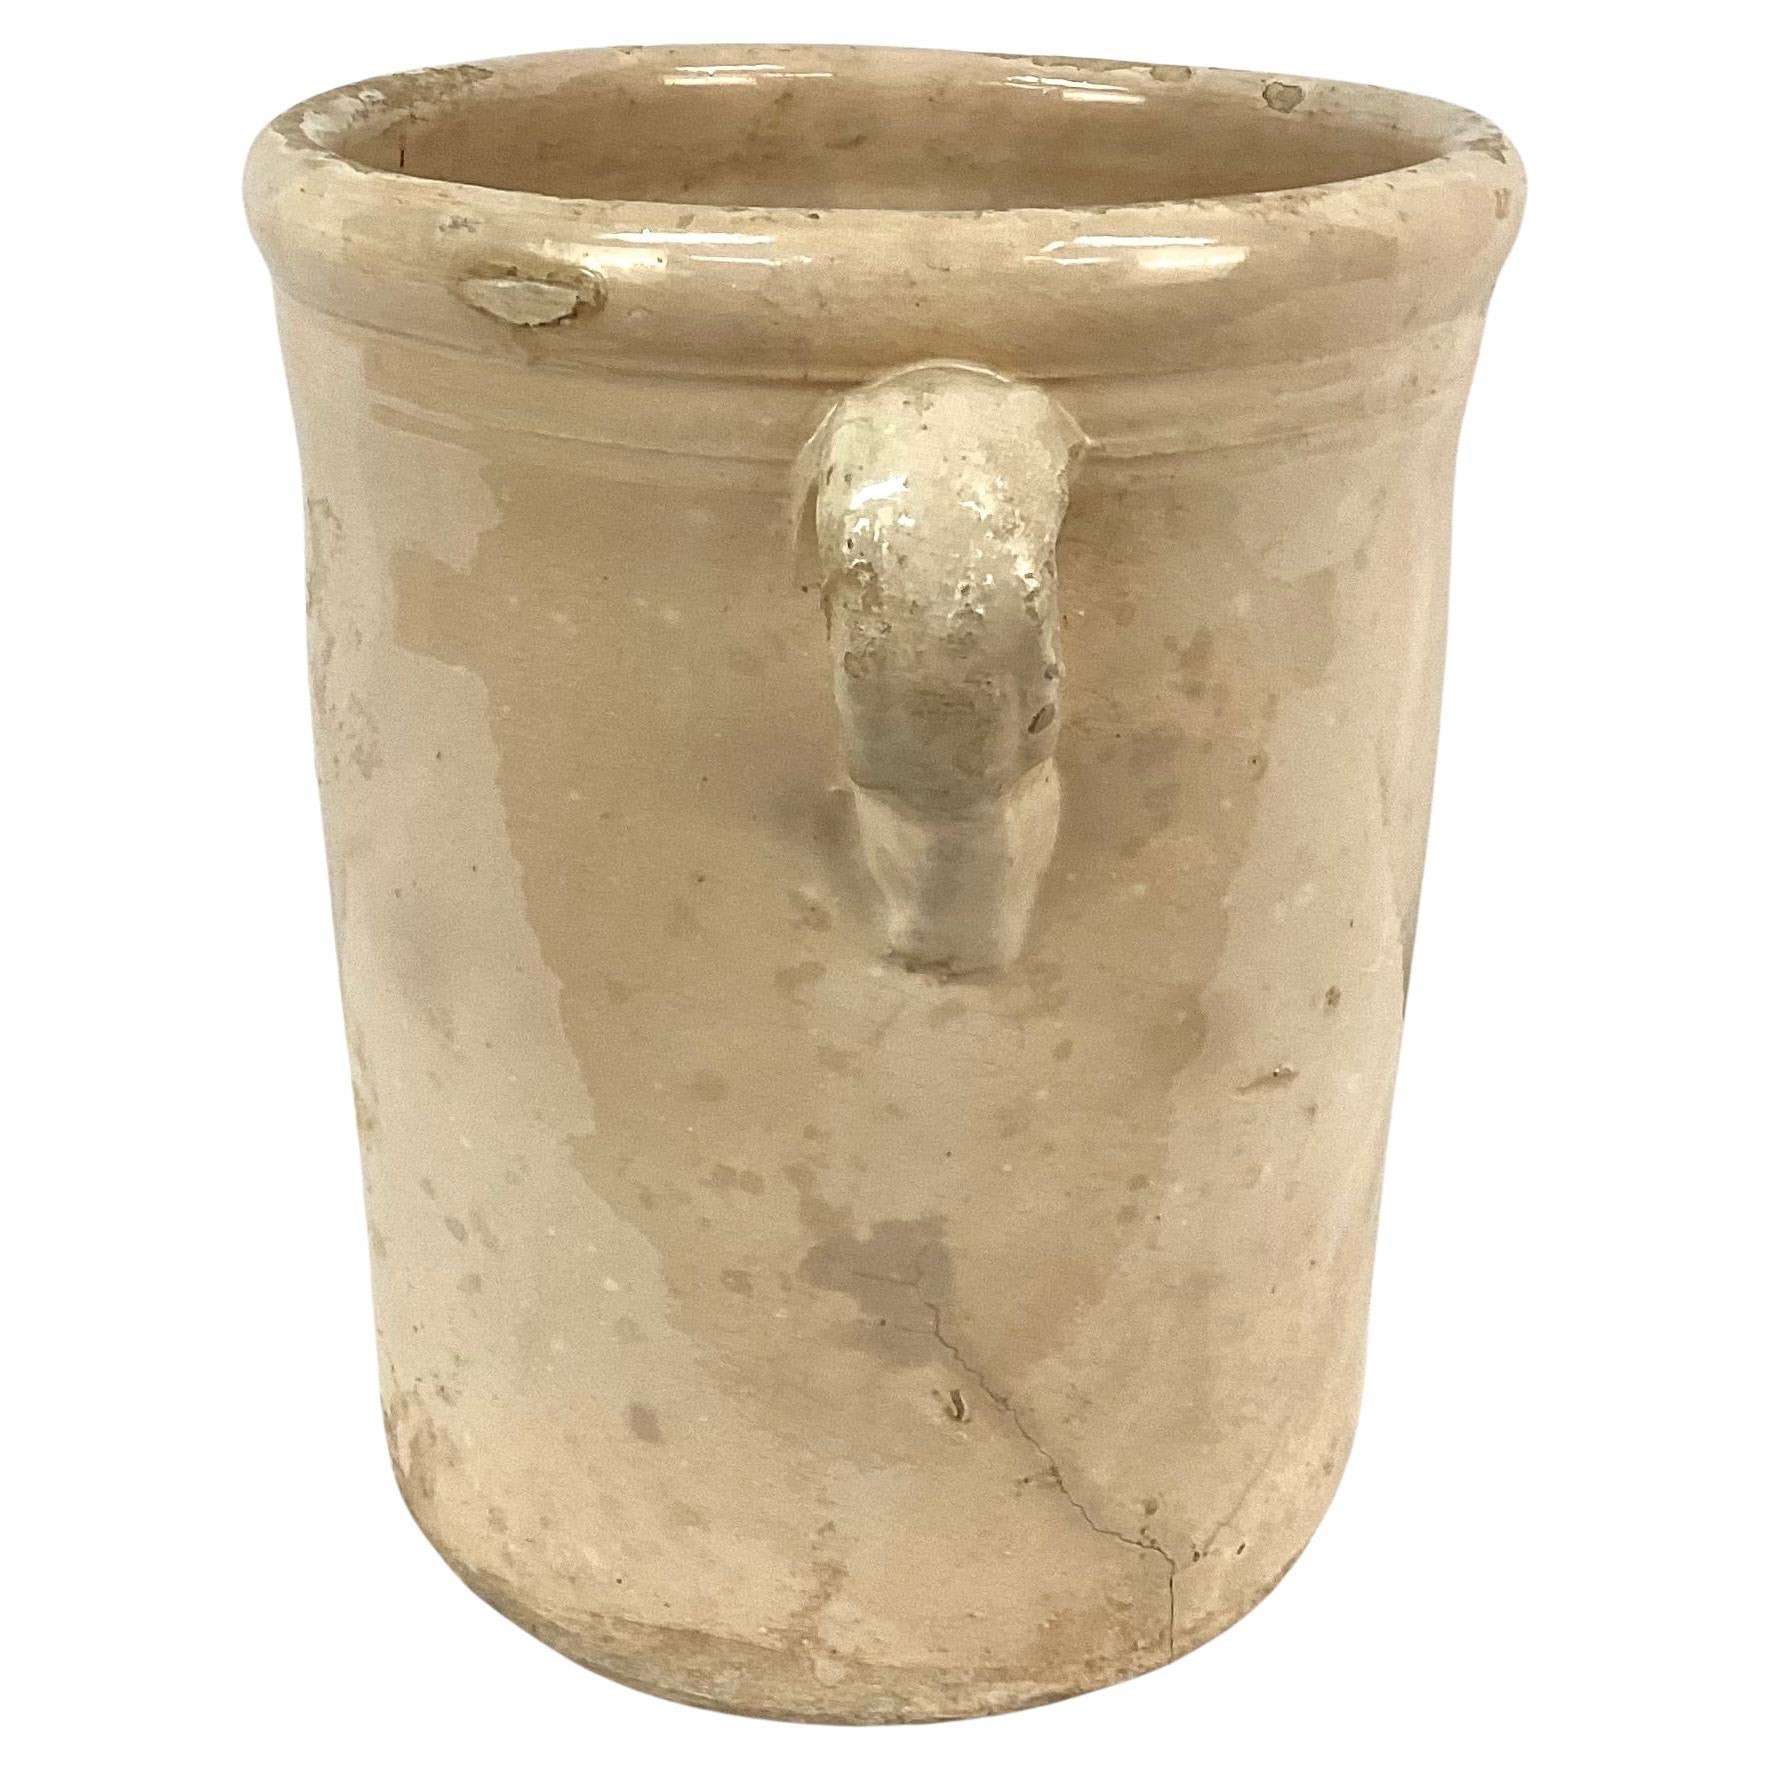  19th Century Italian Chiminea Preserve Pot     #5 In Good Condition For Sale In Bradenton, FL